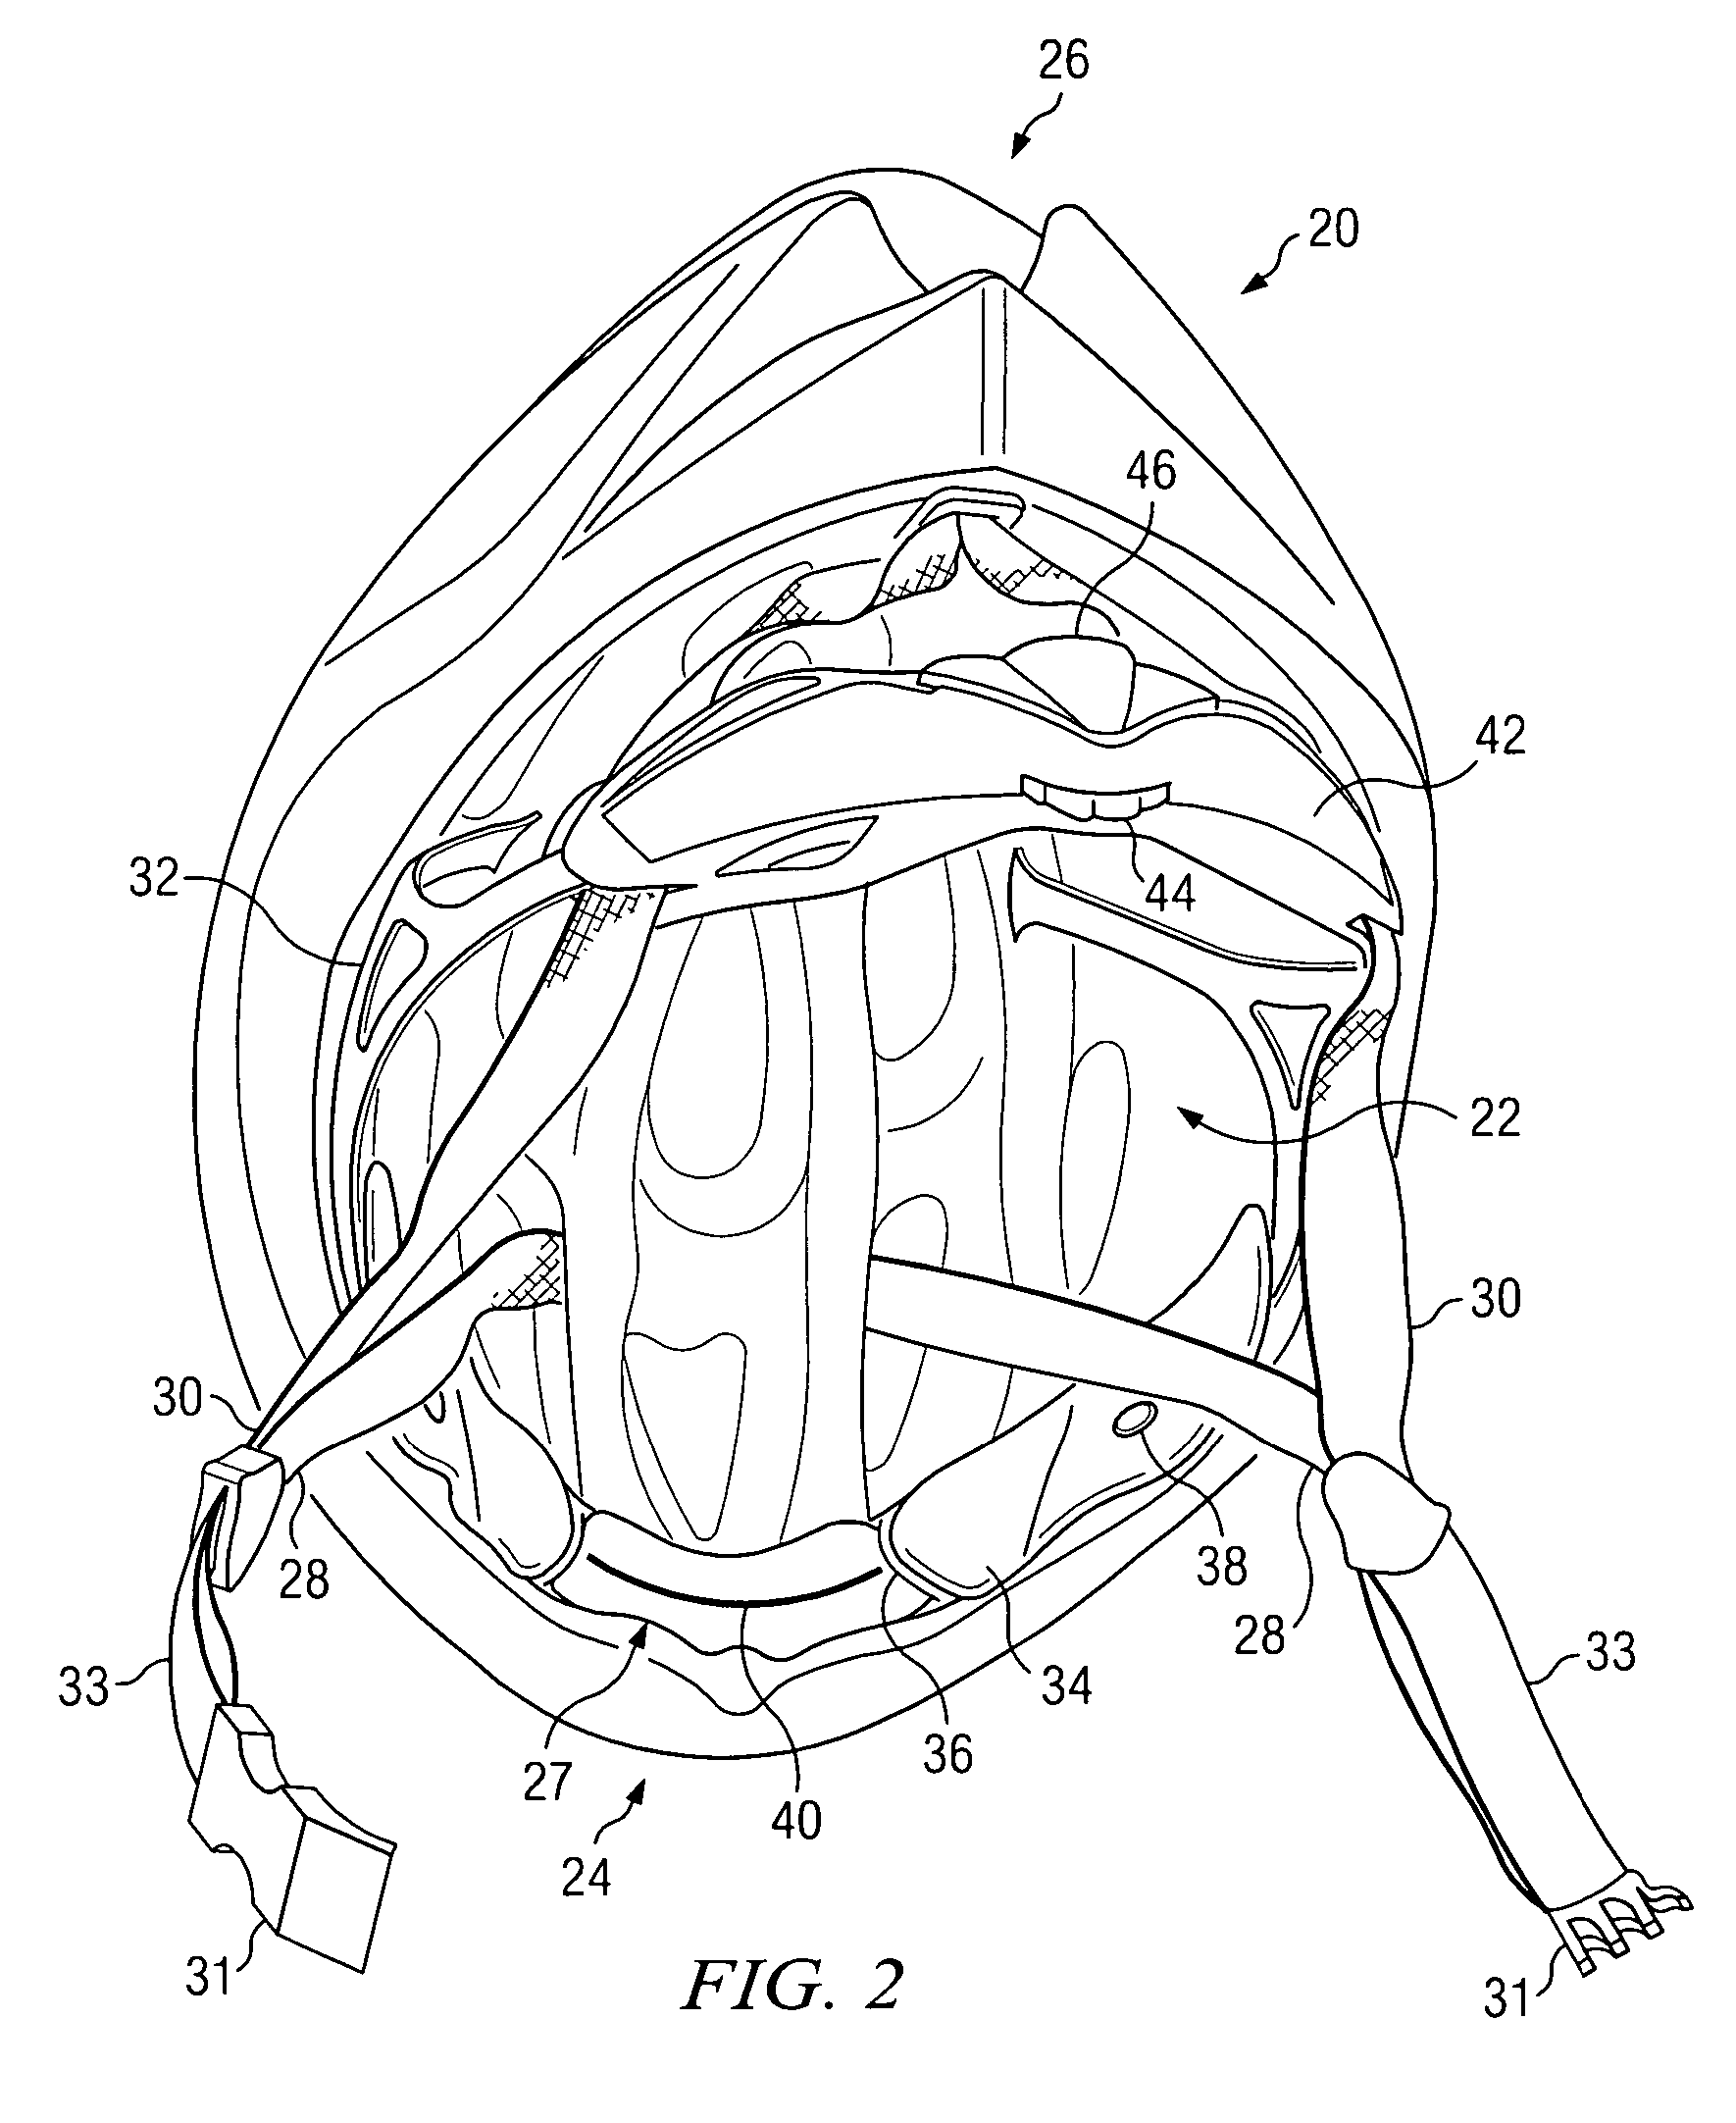 Head gear fitting system